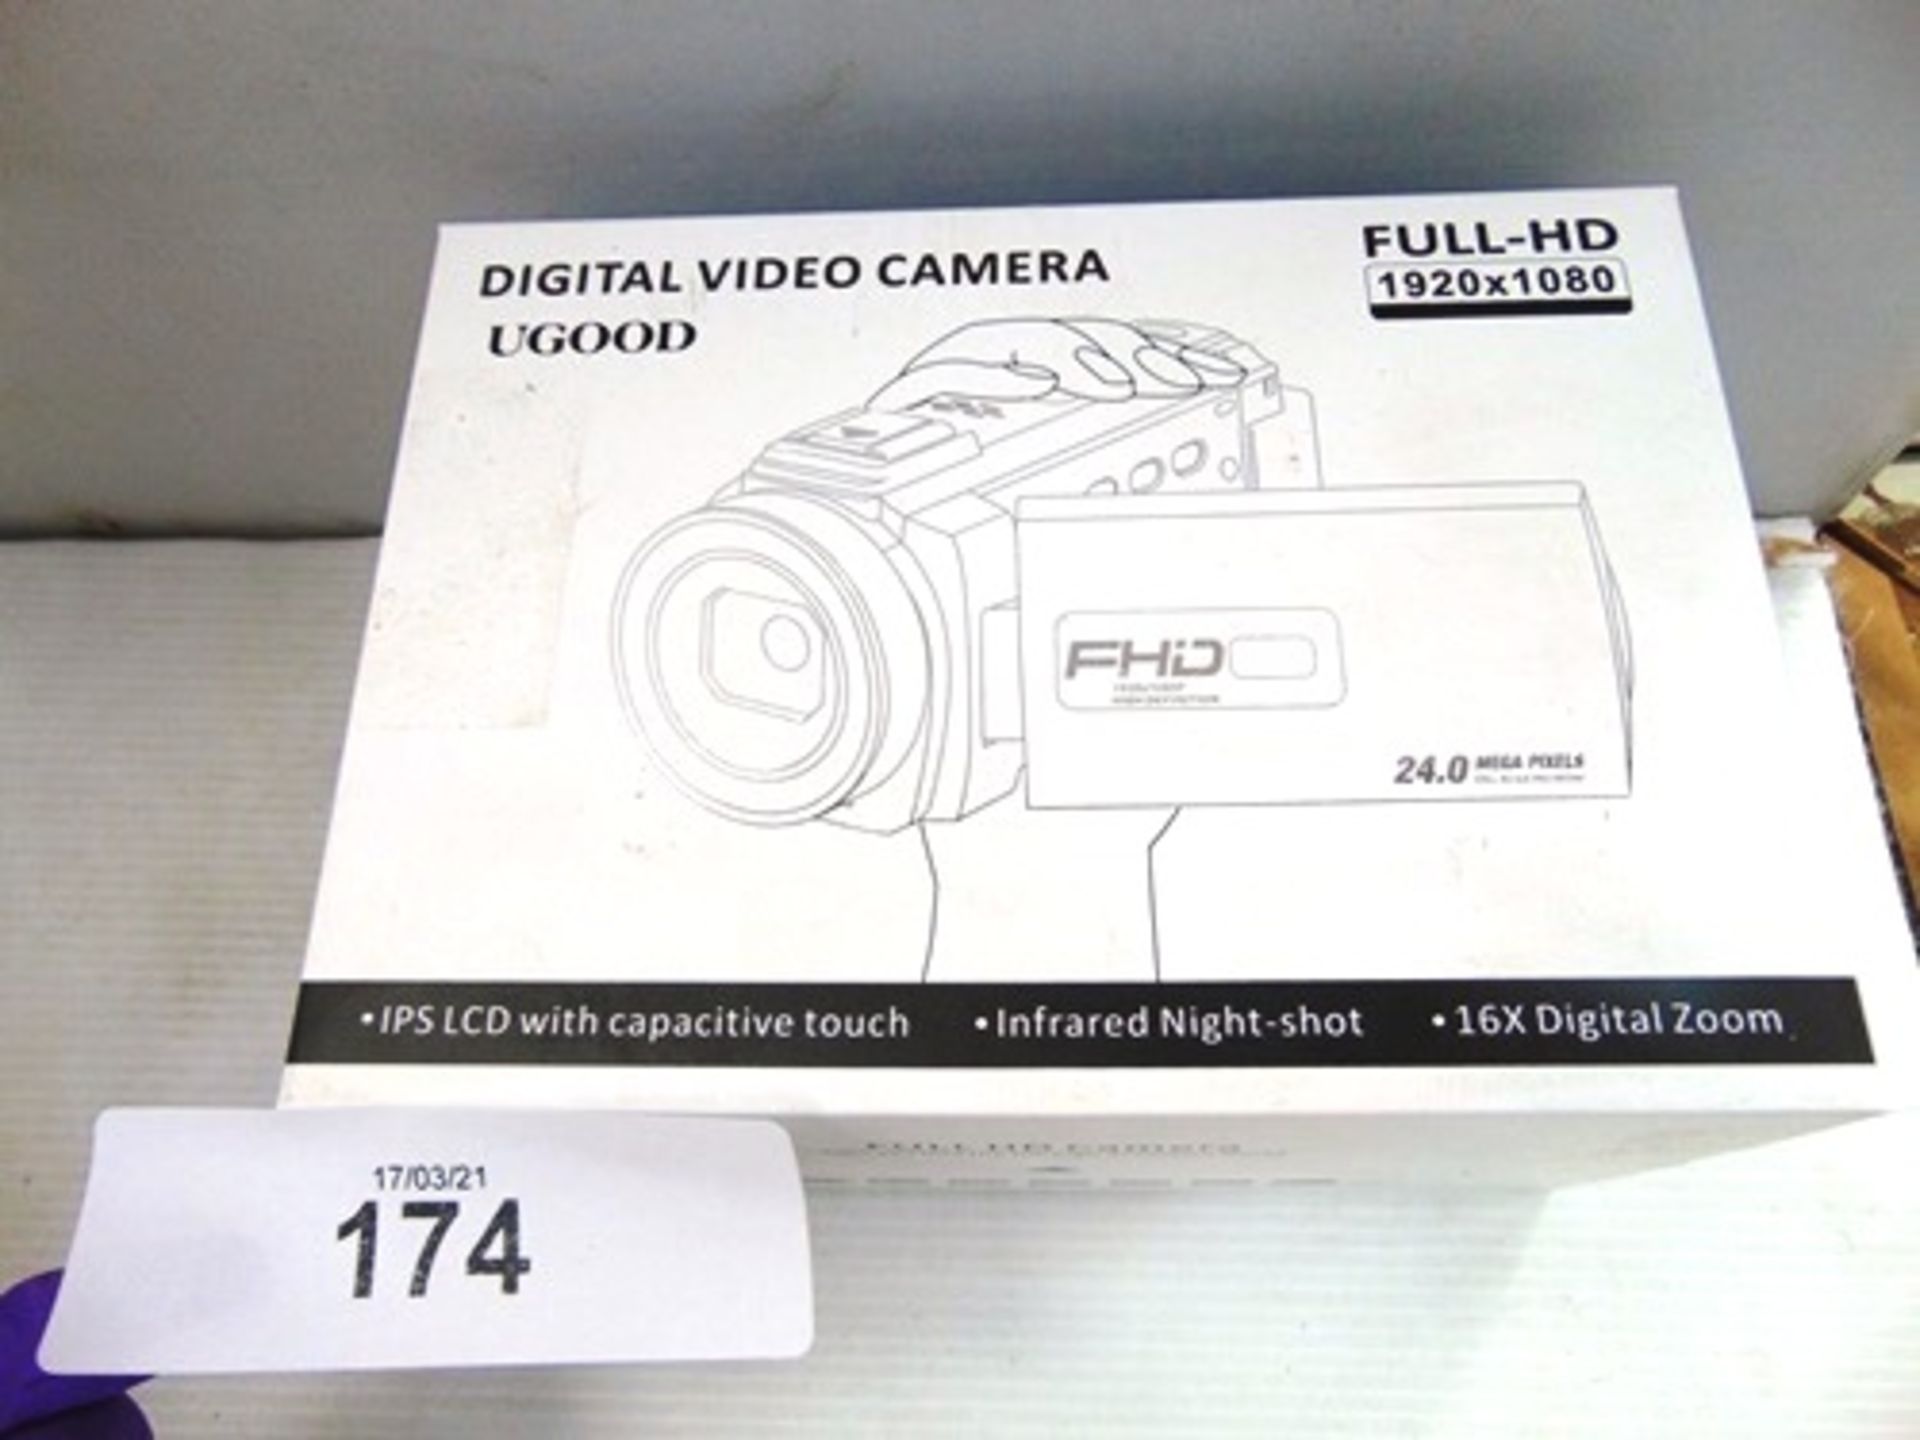 1 x UGOOD digital video camera, model HDV-2053STRM, 24 mega pixels, Full HD 1920 x 1080 - New in